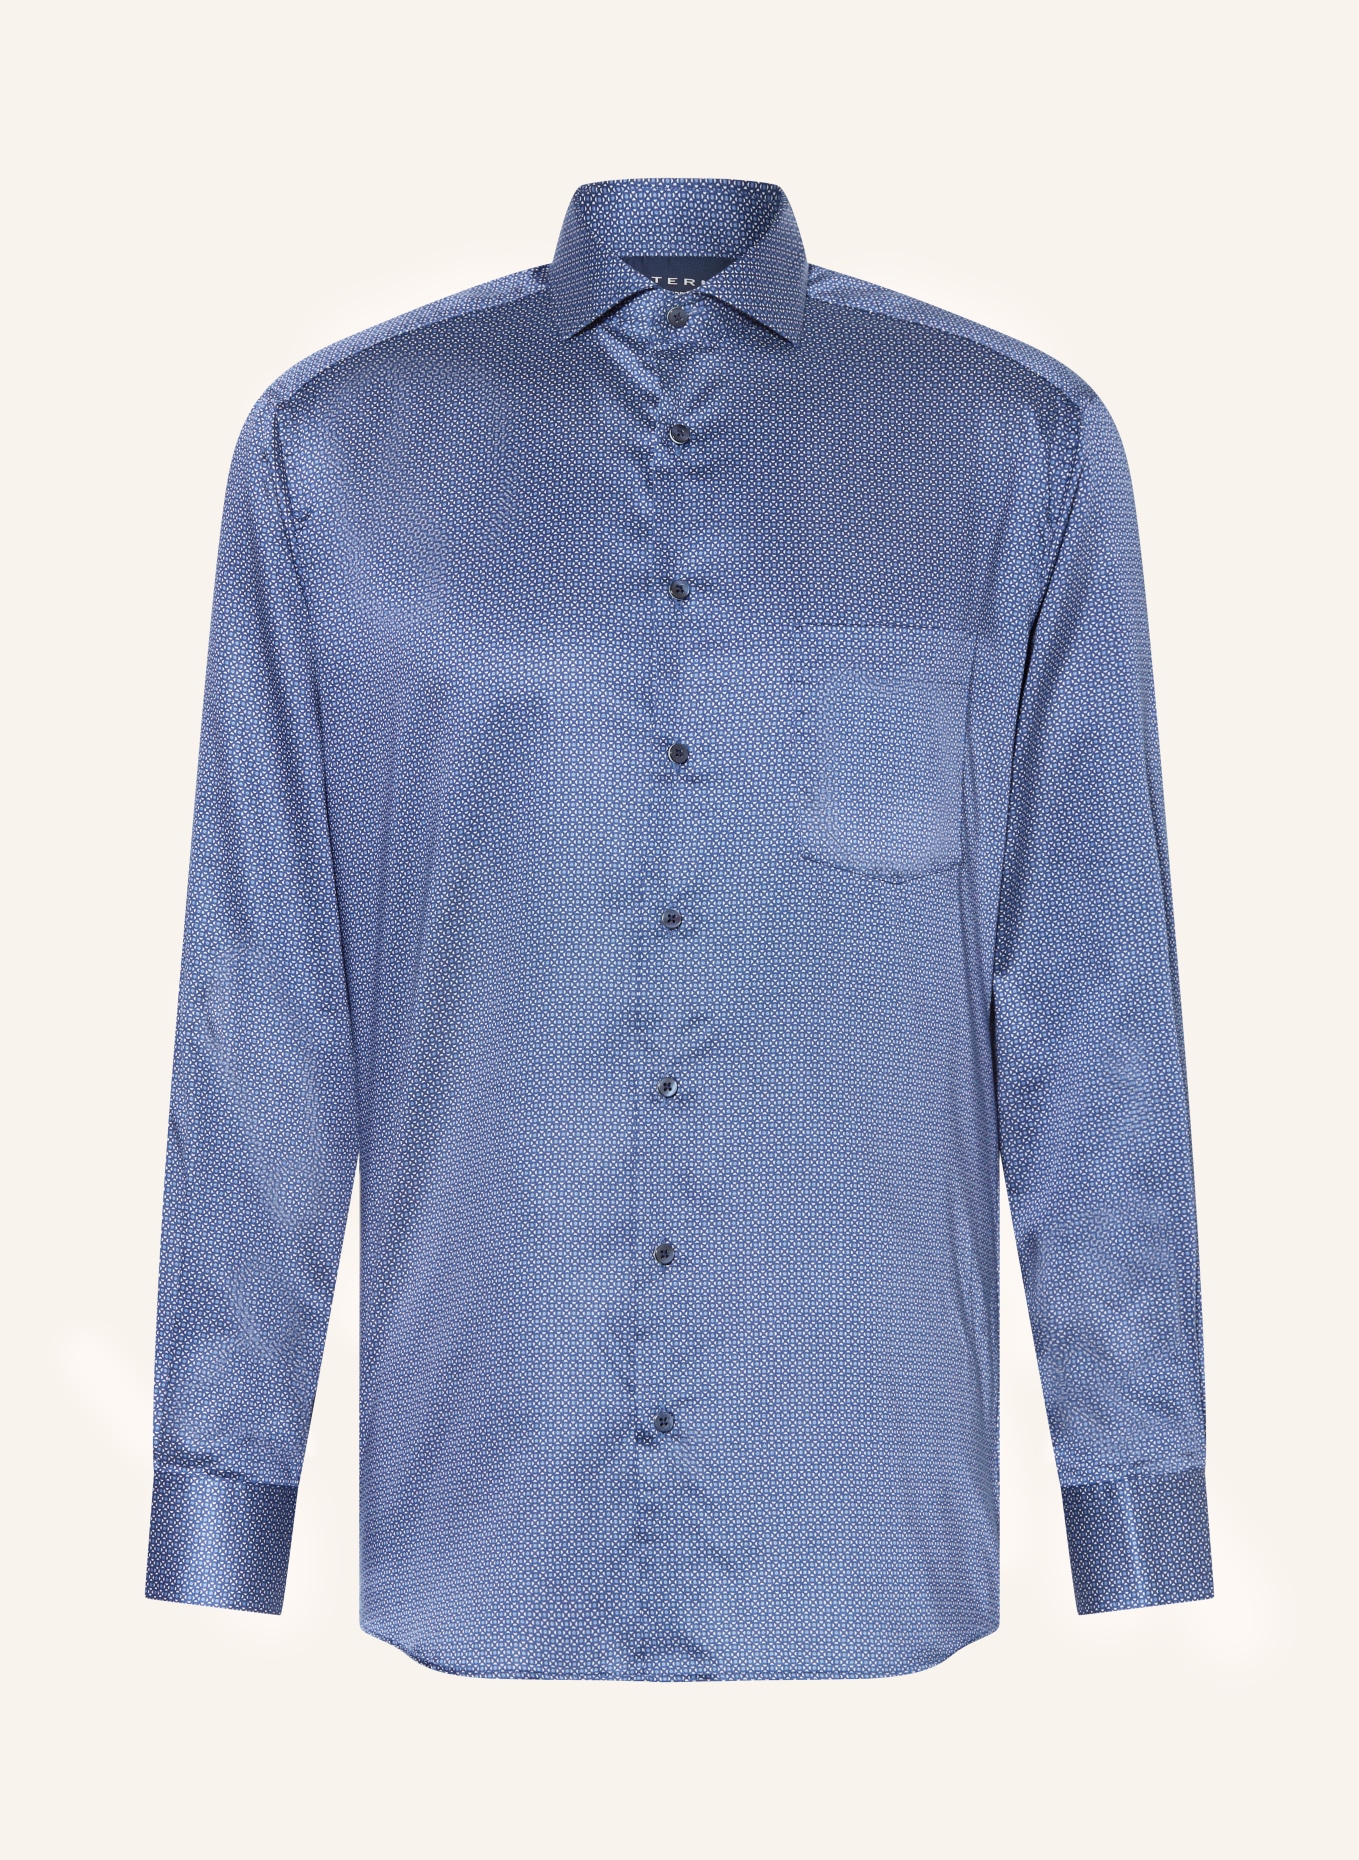 ETERNA Shirt modern fit in dark blue/ blue/ white | Blusenshirts